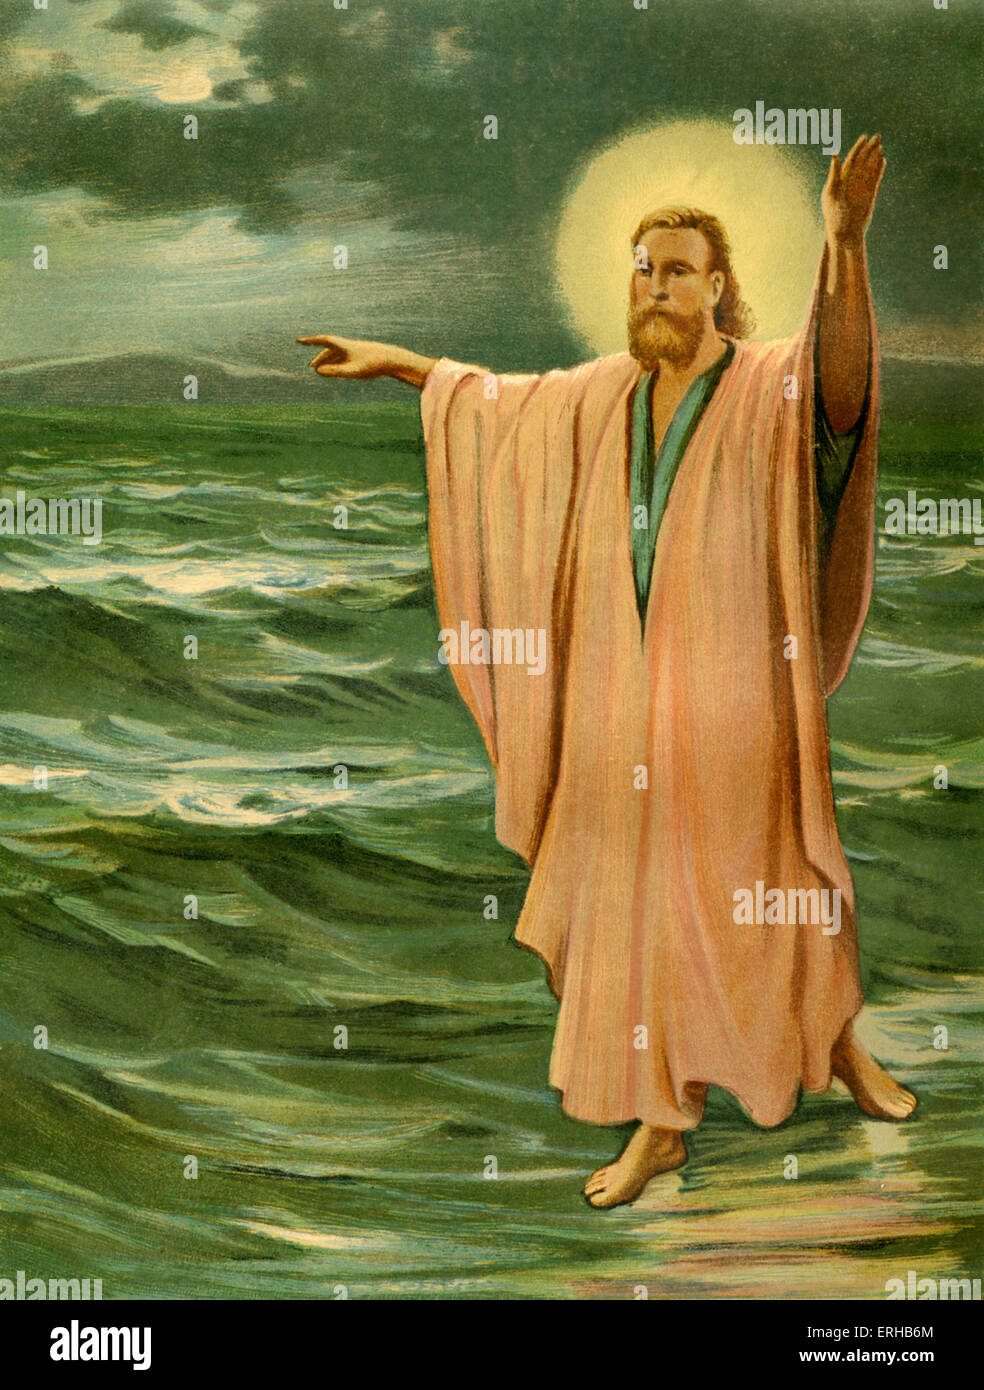 Jesucristo realizar uno de sus milagros - paseos en el lago de Galilea (Mateo 14:22-33, Marcos 6:45-52, Juan 6:16-21). Foto de stock